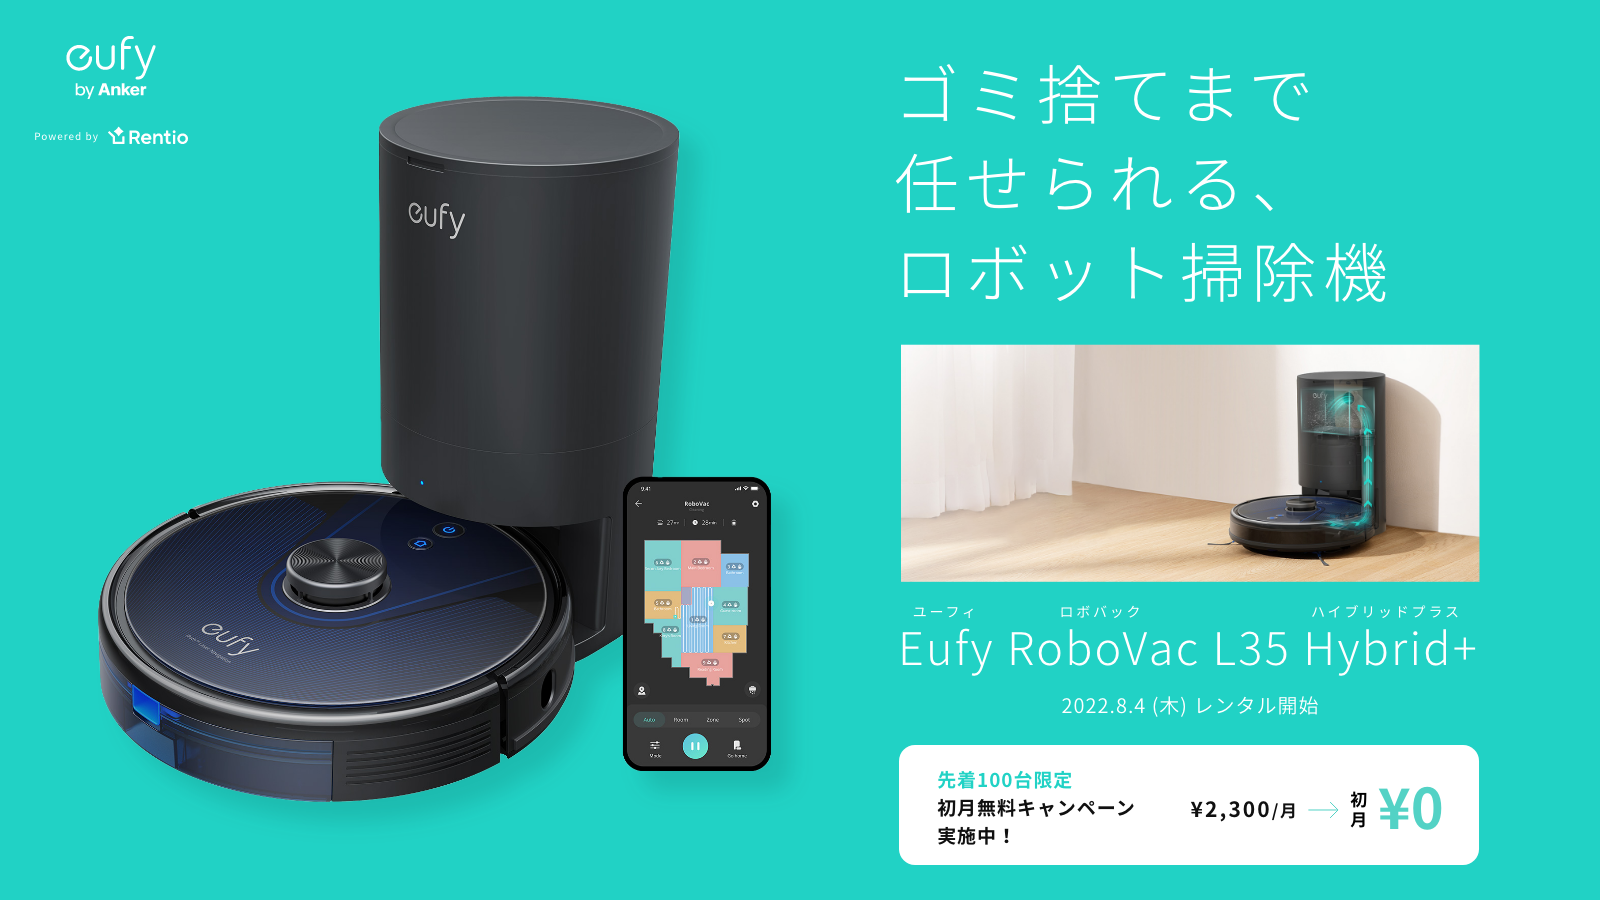 Eufy】Eufy最新のロボット掃除機「Eufy RoboVac L35 Hybrid+」を一般 